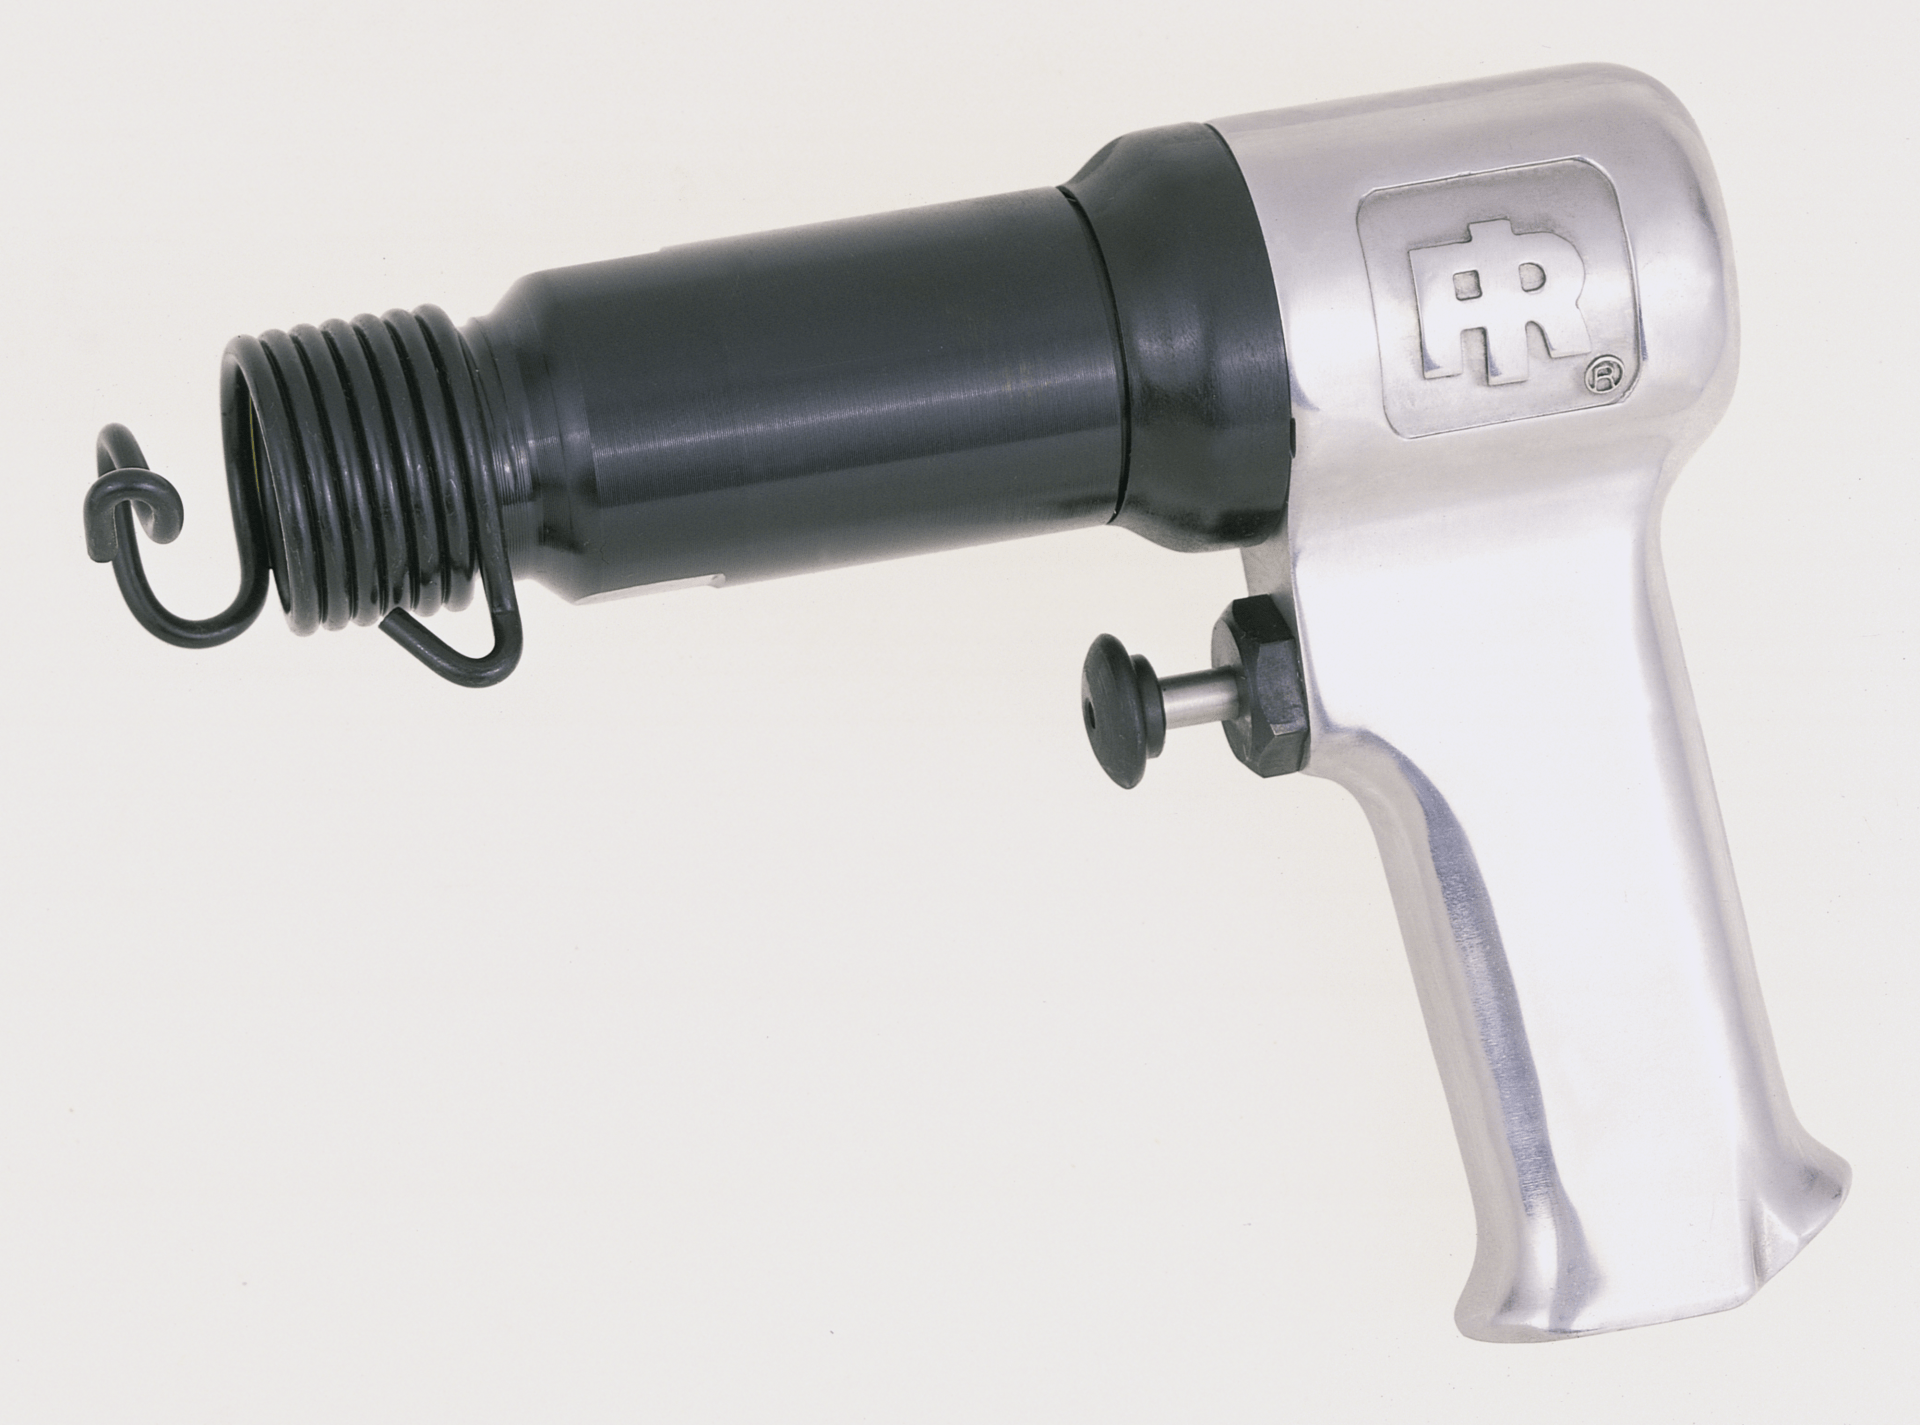 Ingersoll Rand 121-K6 Marteau pneumatique (zip gun) 0.401